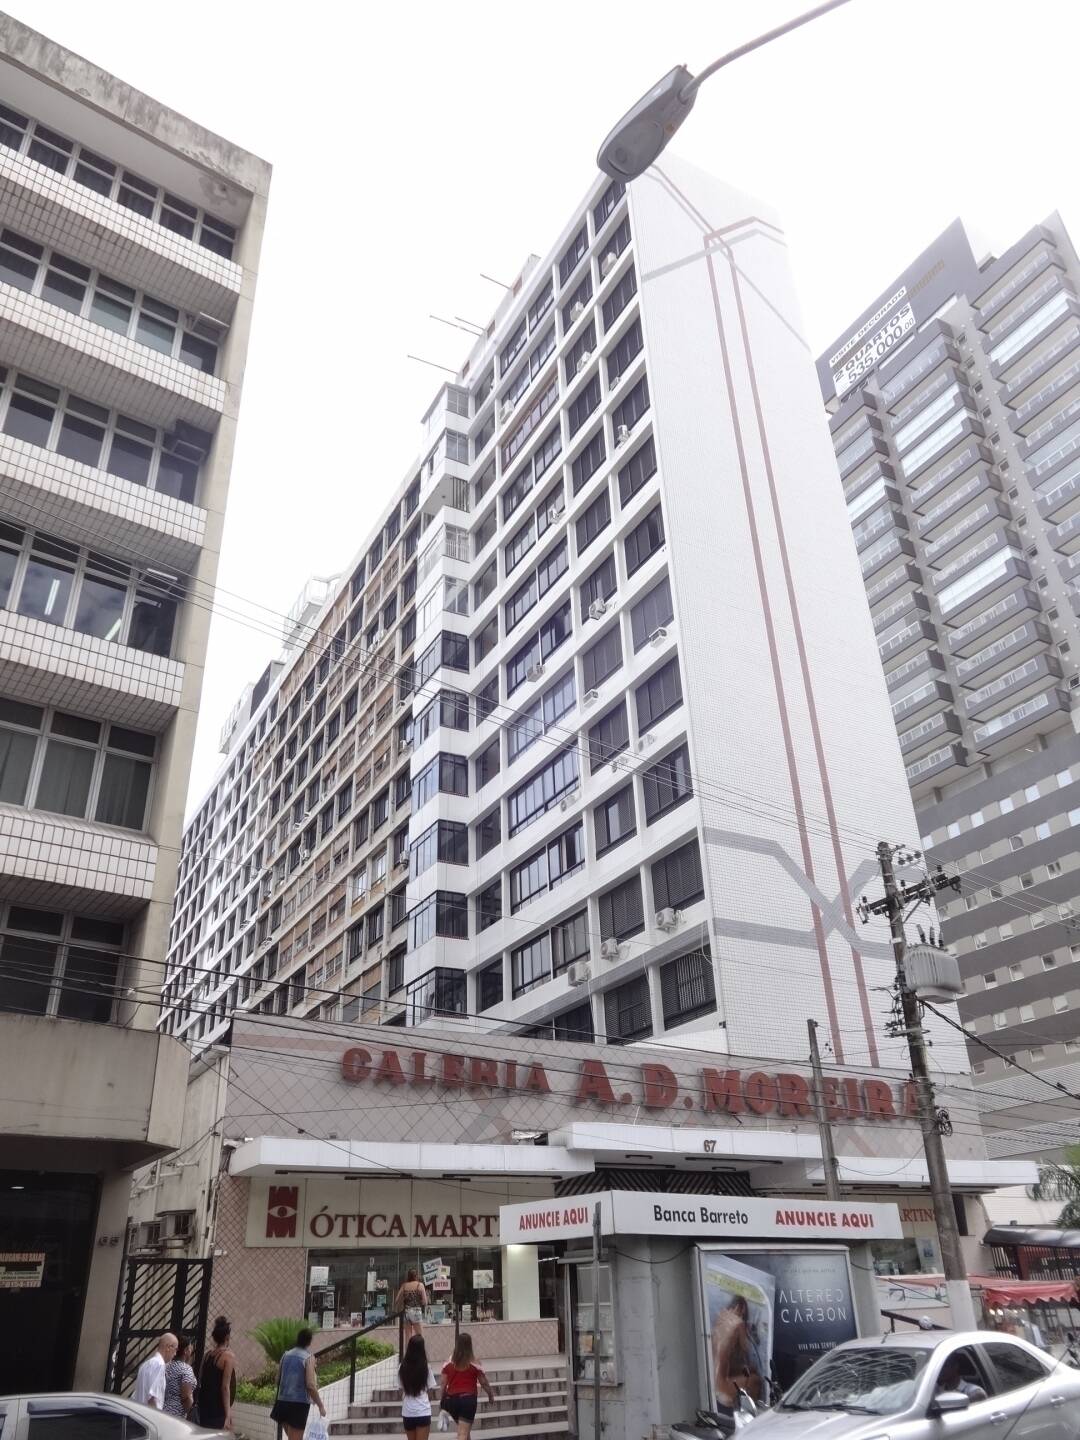 #AD Moreira - Apartamento para Locação em Santos - SP